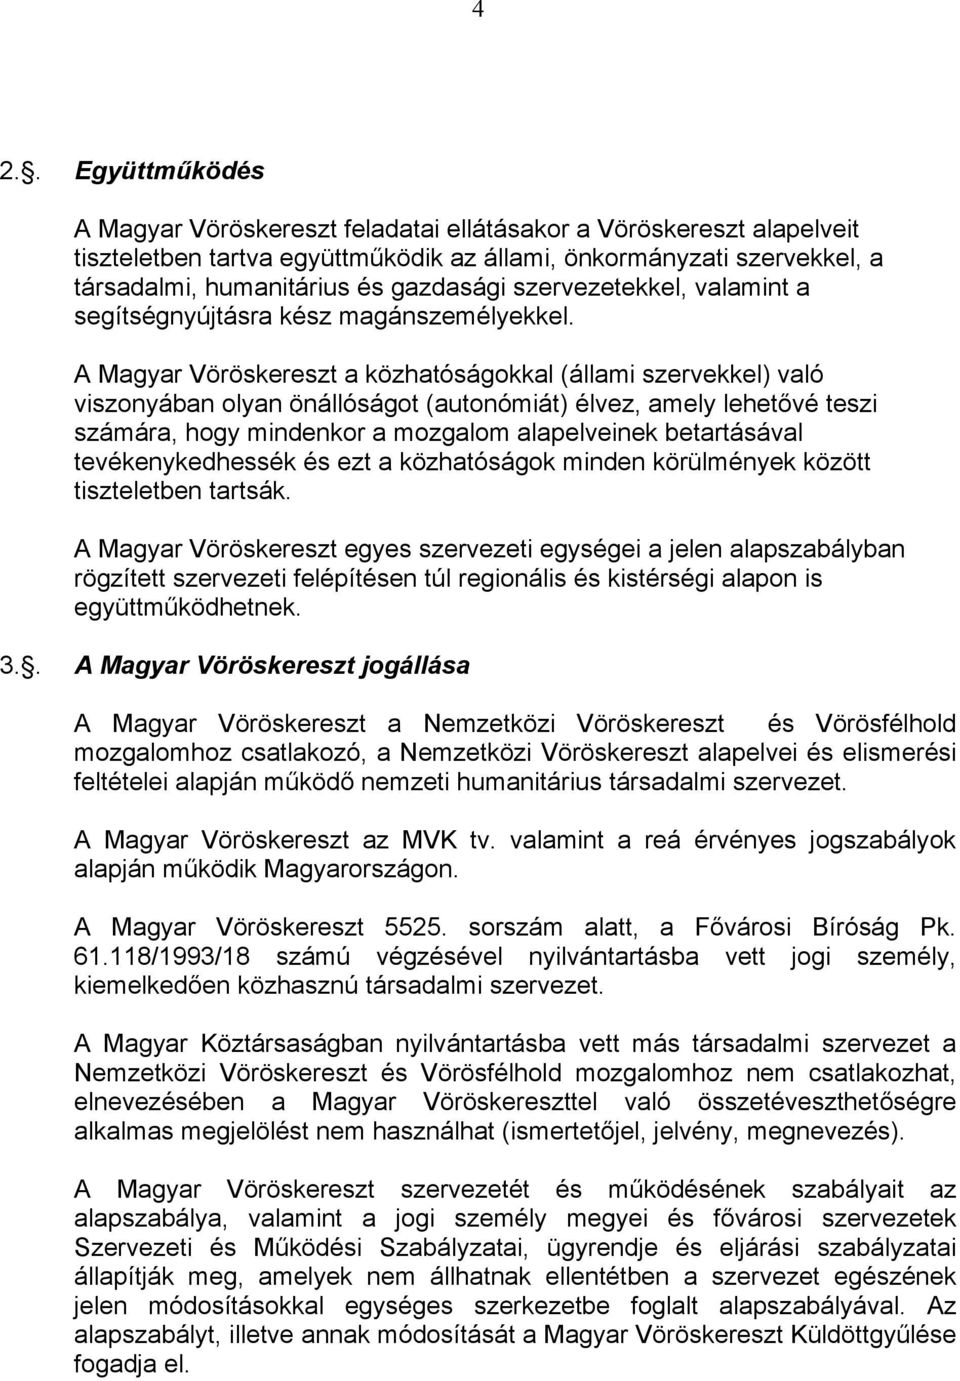 A Magyar Vöröskereszt a közhatóságokkal (állami szervekkel) való viszonyában olyan önállóságot (autonómiát) élvez, amely lehetővé teszi számára, hogy mindenkor a mozgalom alapelveinek betartásával